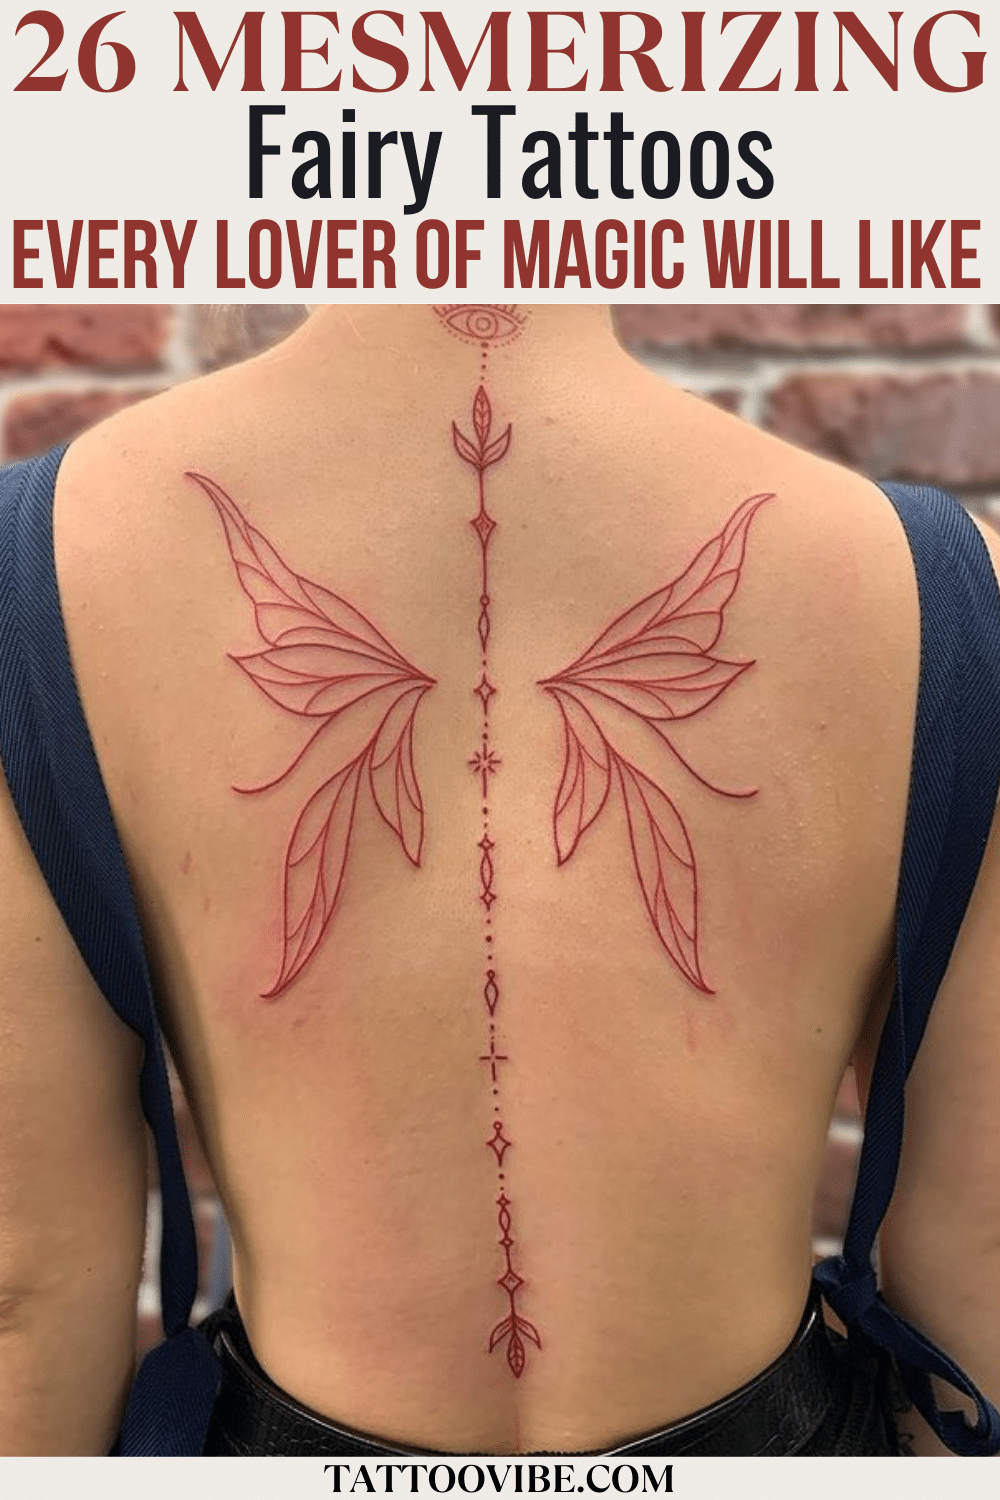 26 tatuagens de fadas fascinantes que todos os amantes da magia vão gostar